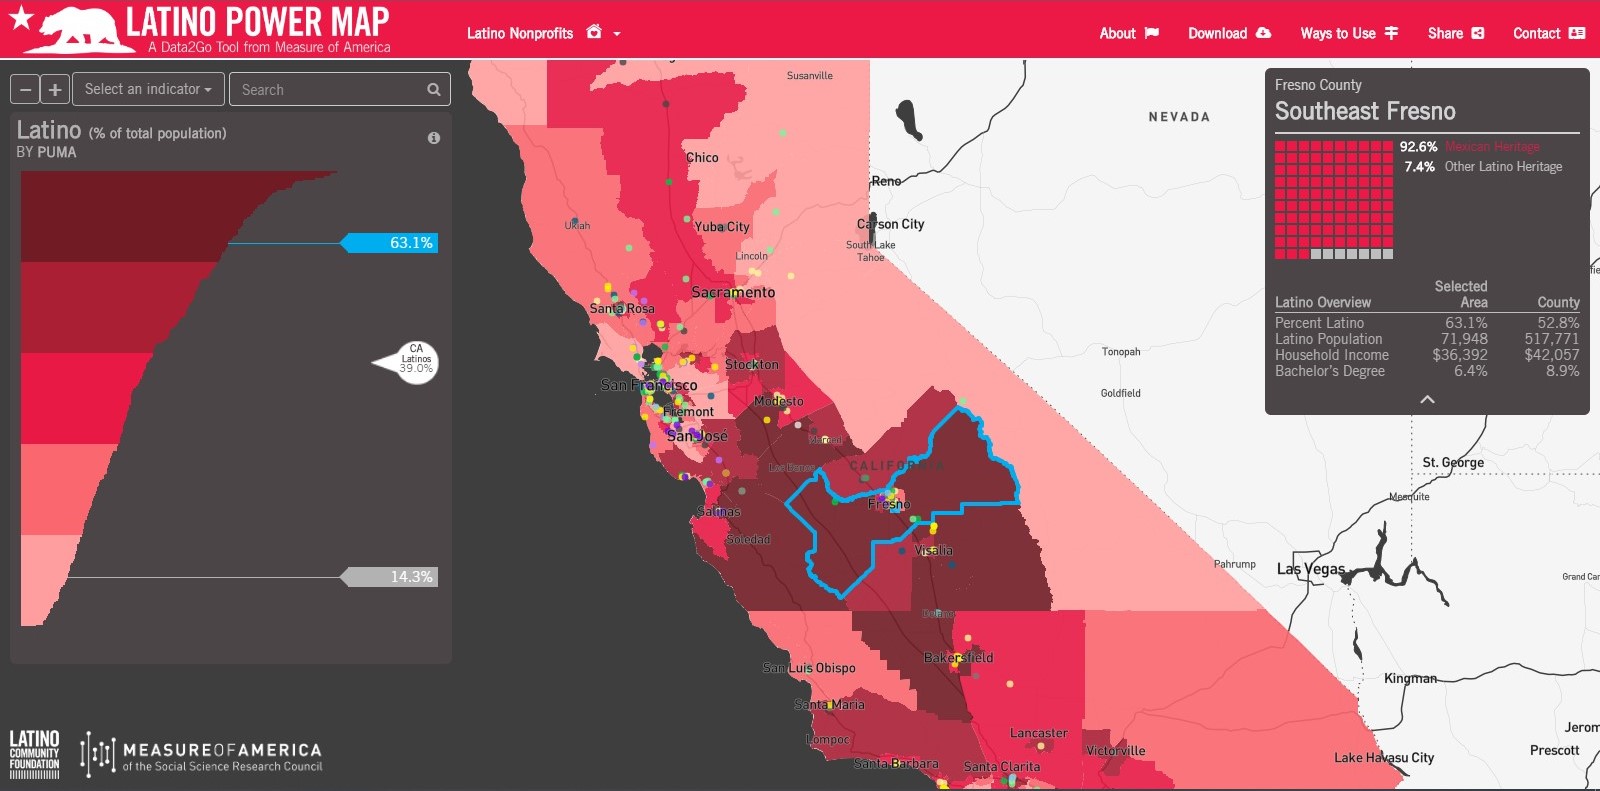 California Latino Power Map's main view